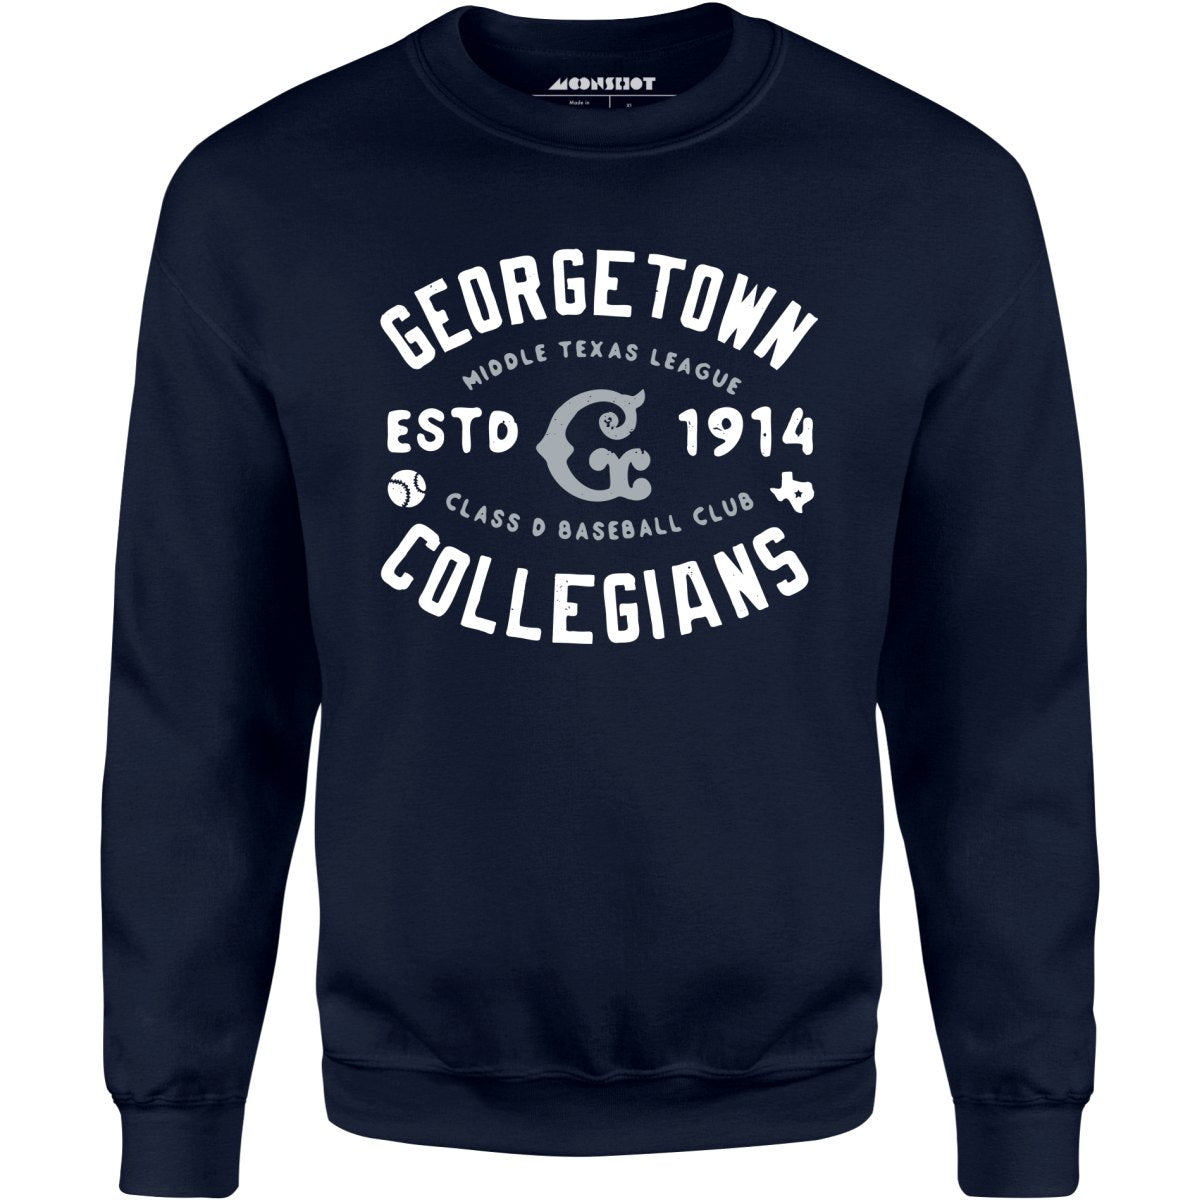 Georgetown Collegians - Texas - Vintage Defunct Baseball Teams - Unisex Sweatshirt